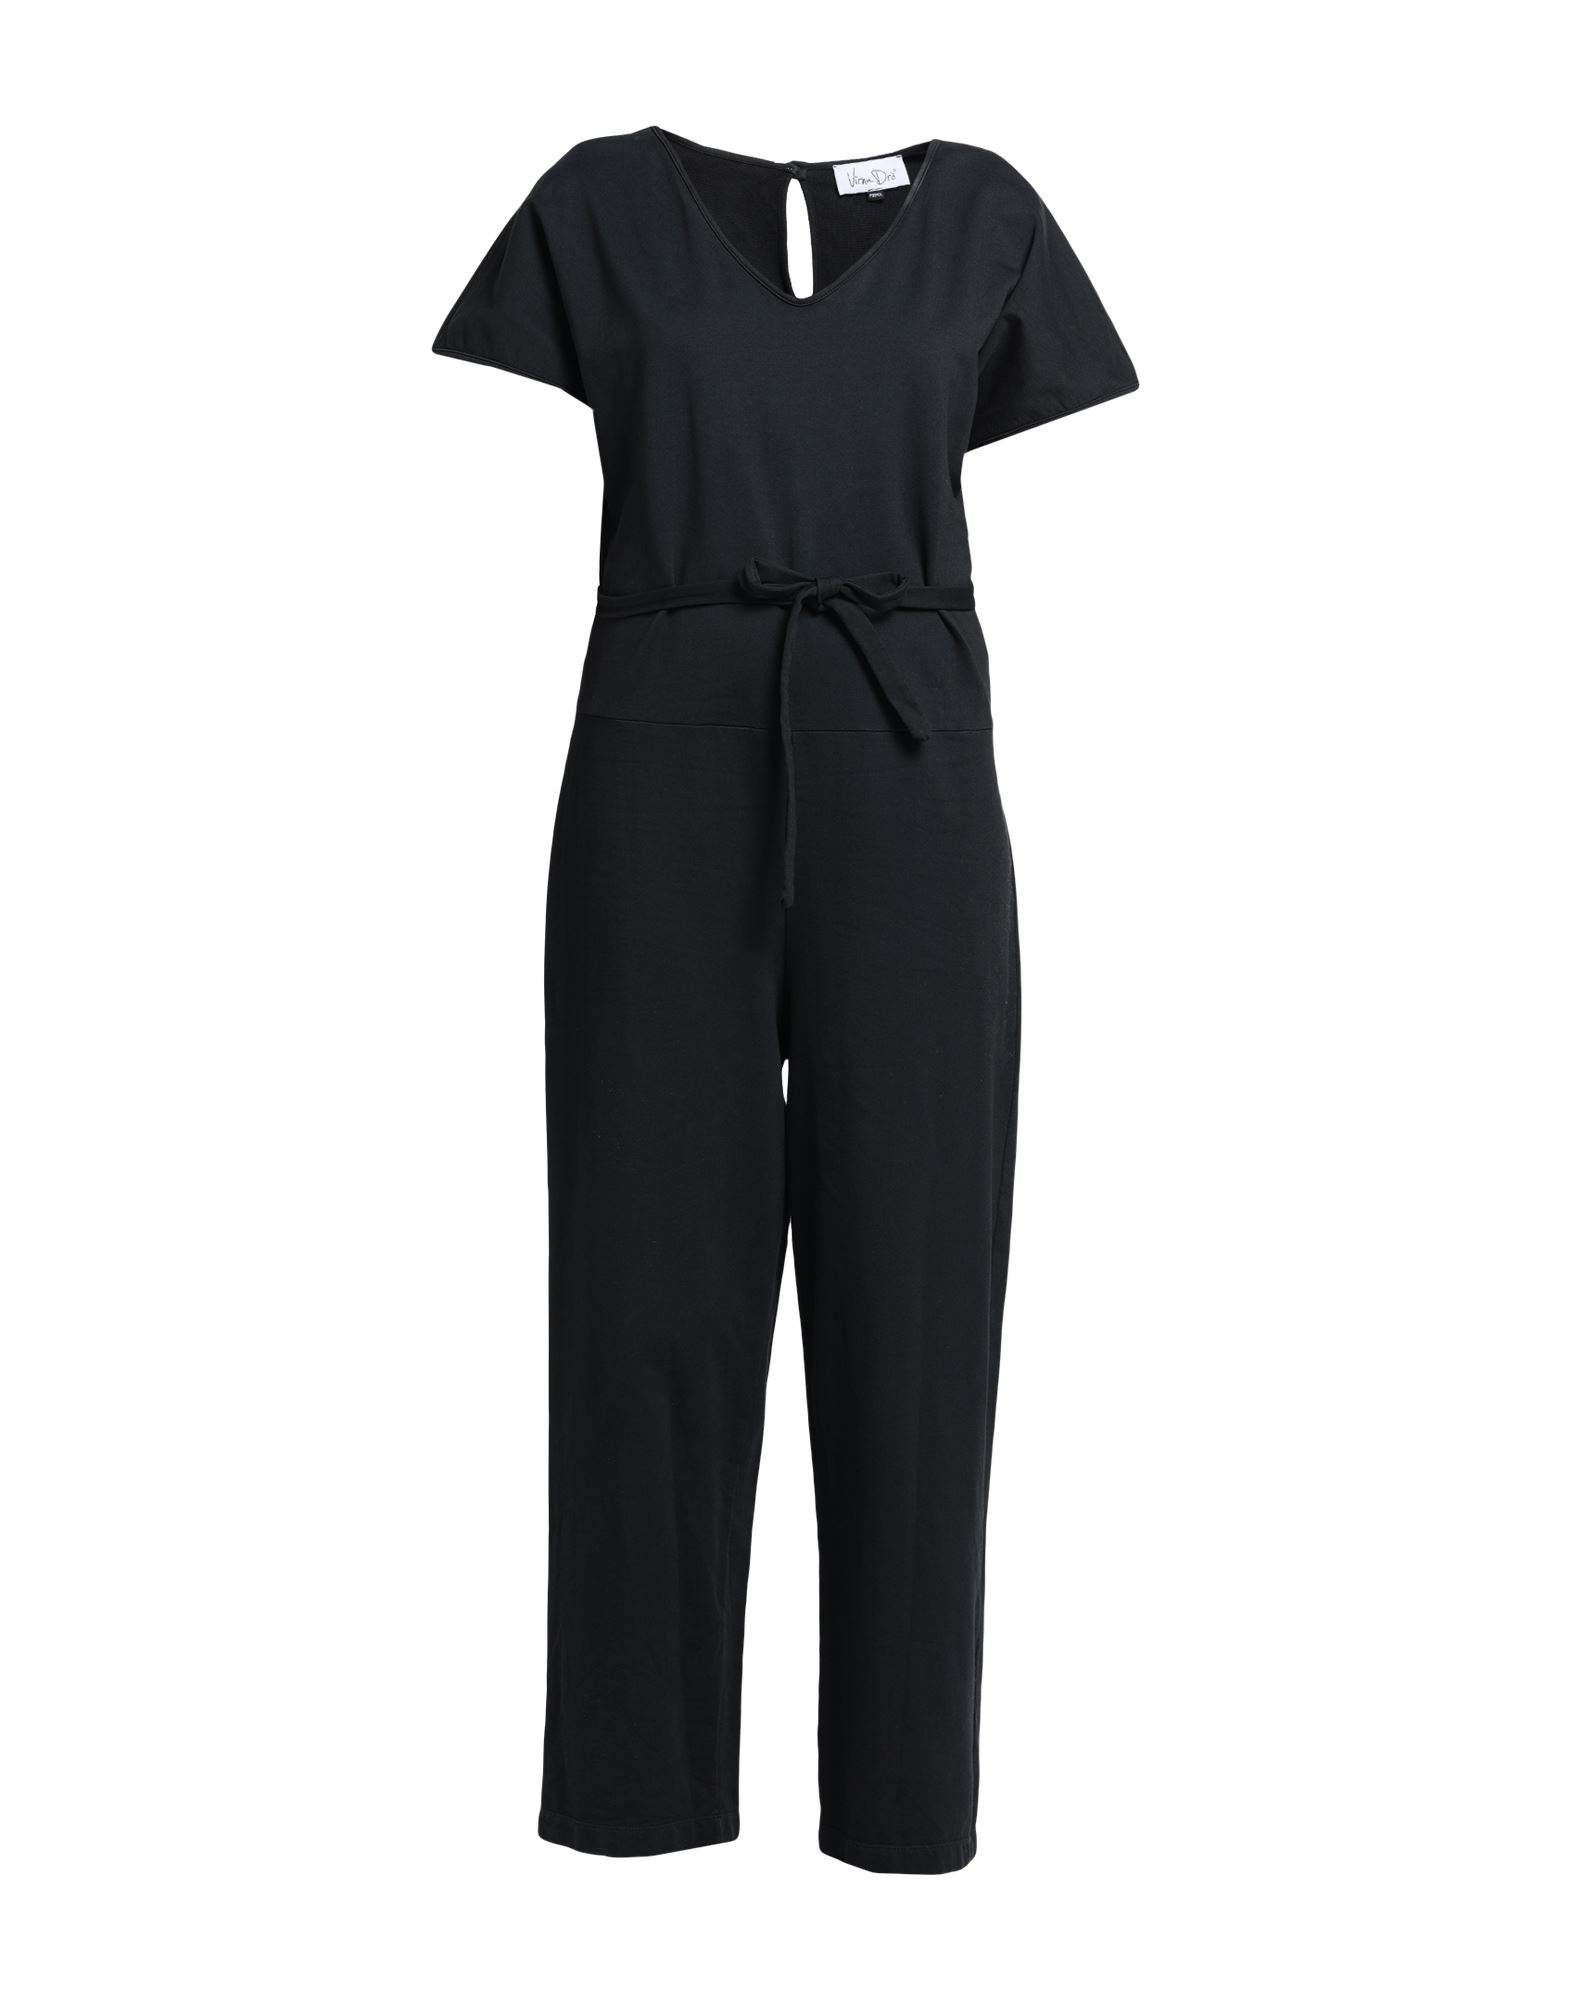 Virna Drò® Virna Drò Woman Jumpsuit Black Size 1 Cotton, Eco Polyester